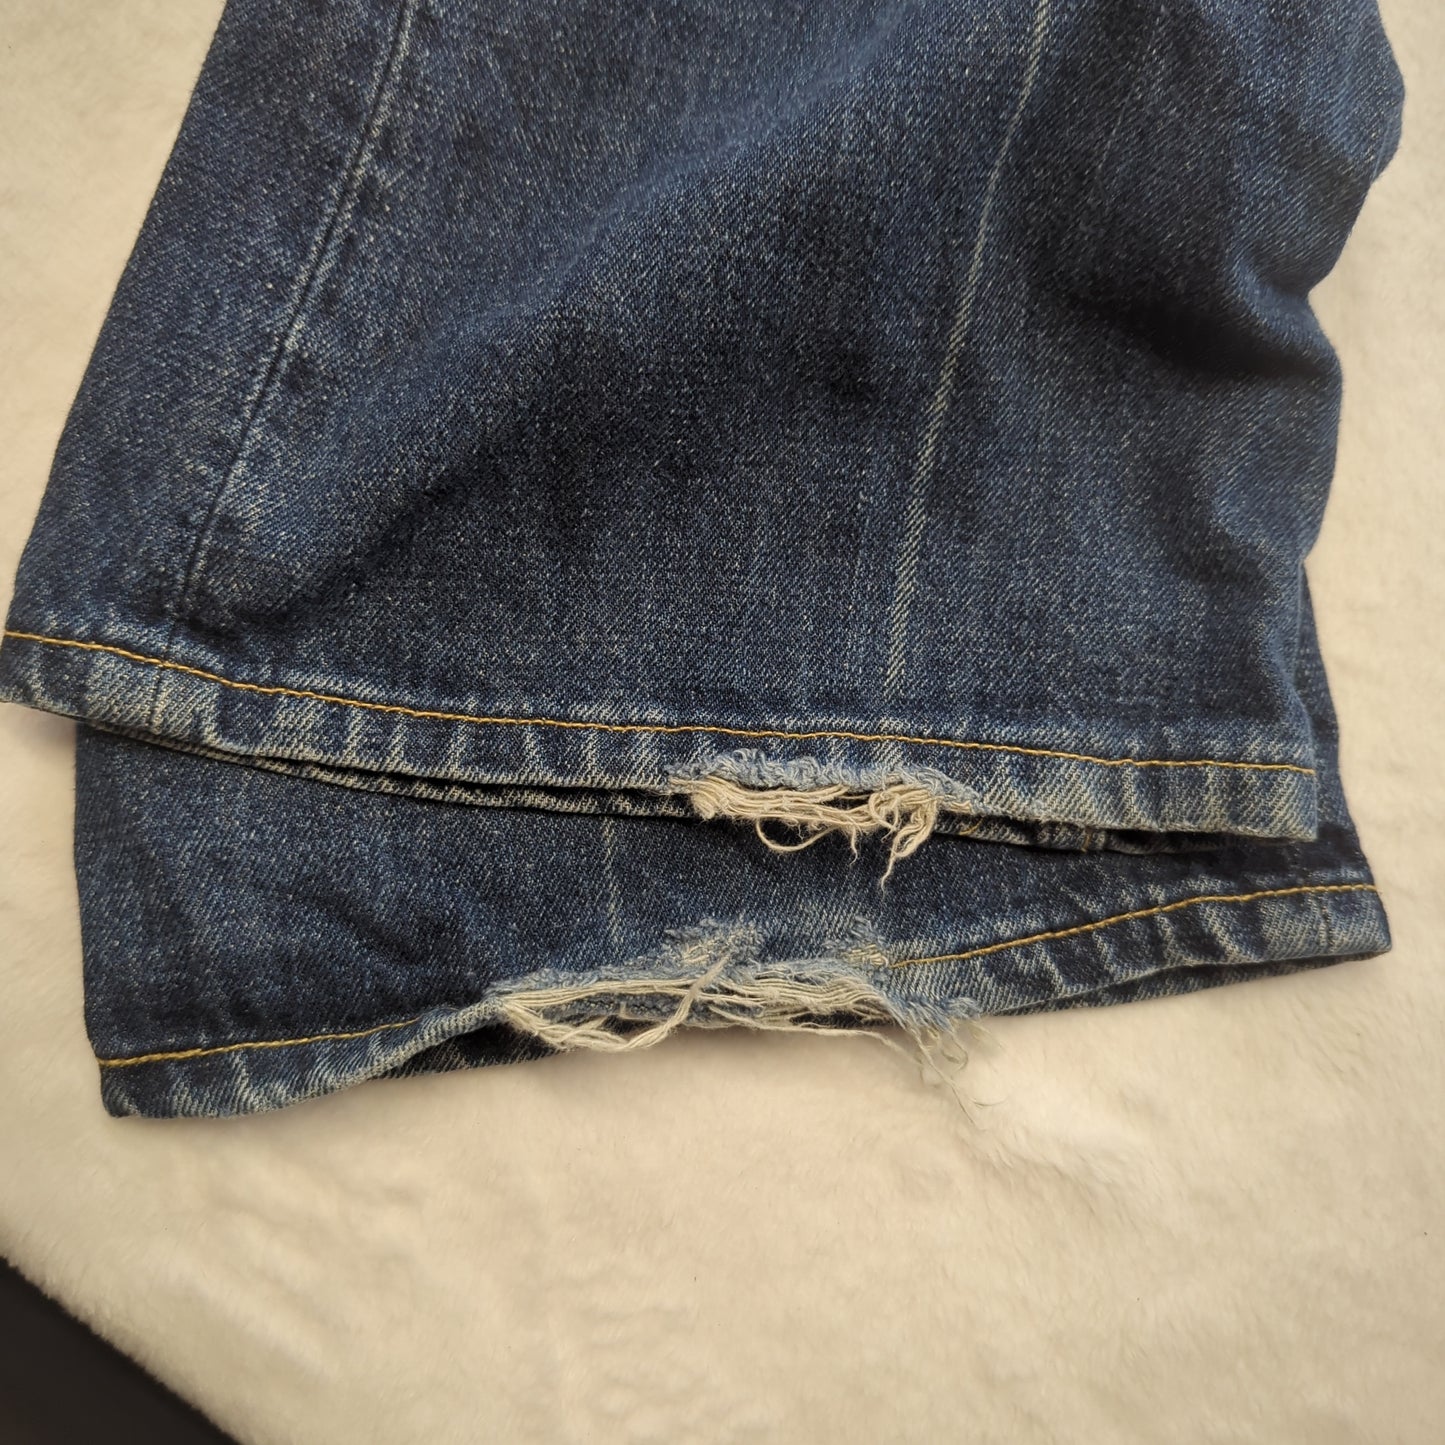 Levi's 525 Vintage Blue Bootcut Denim Jeans Women W34 L32